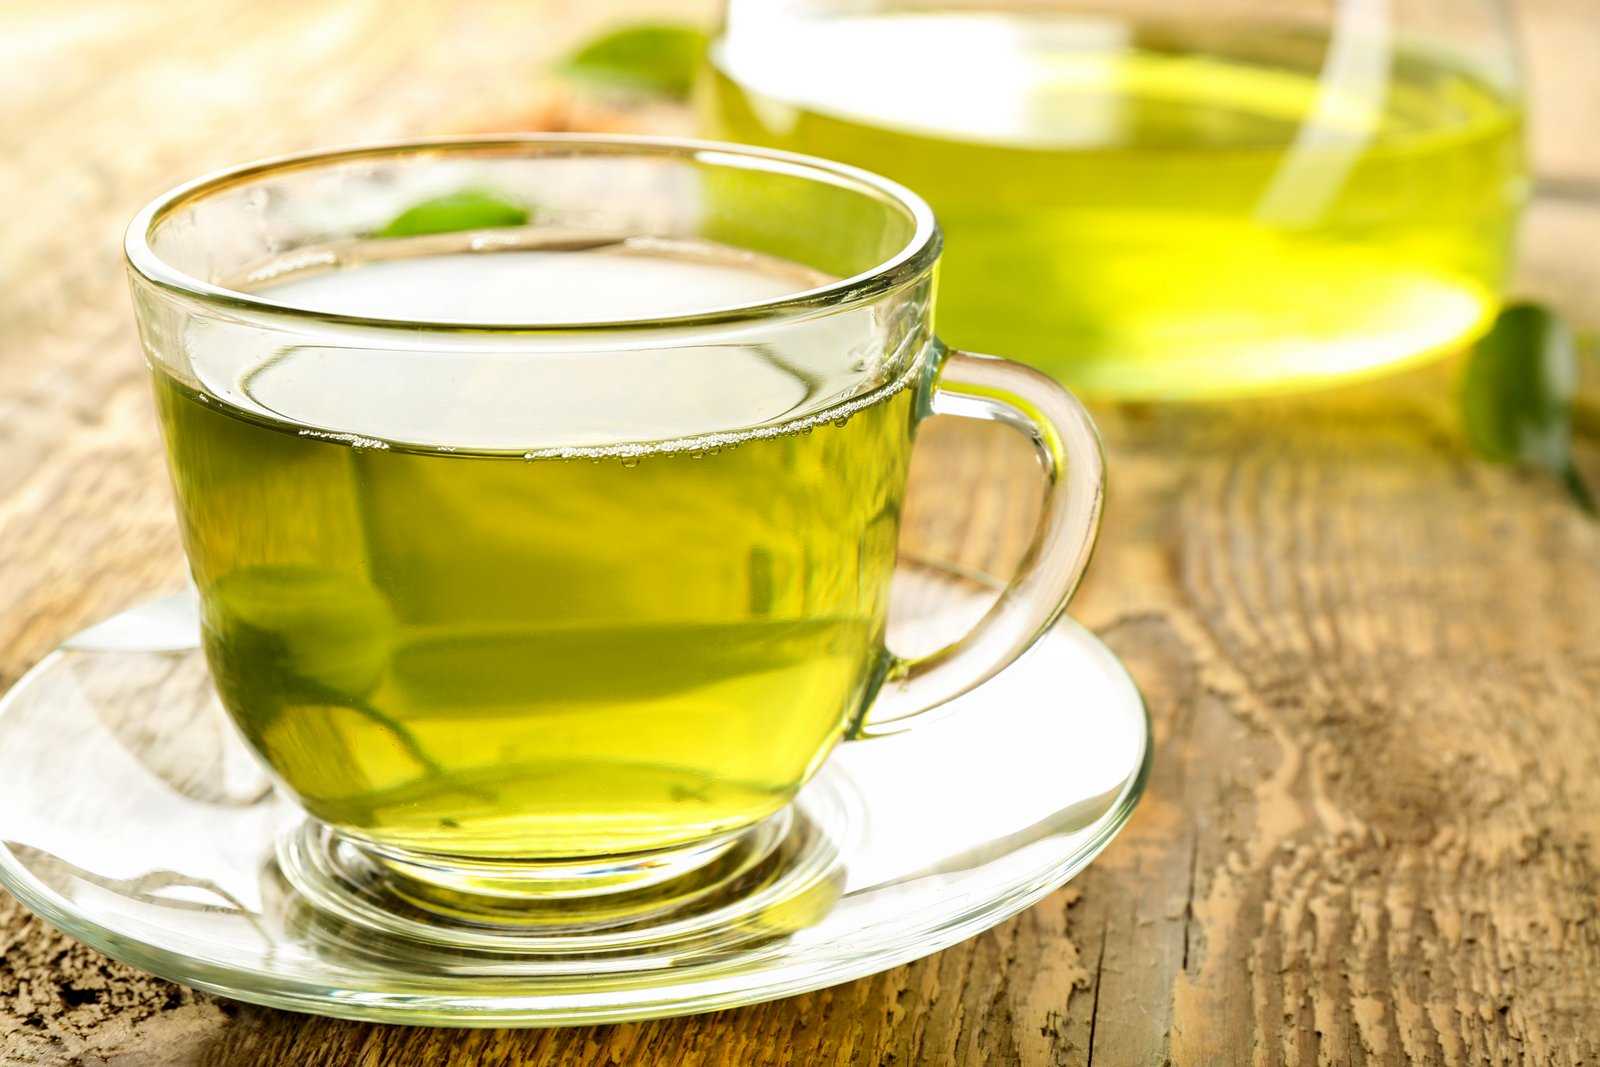 Сколько калорий в чае (зеленом, черном), калорийность на 100 грамм с сахаром